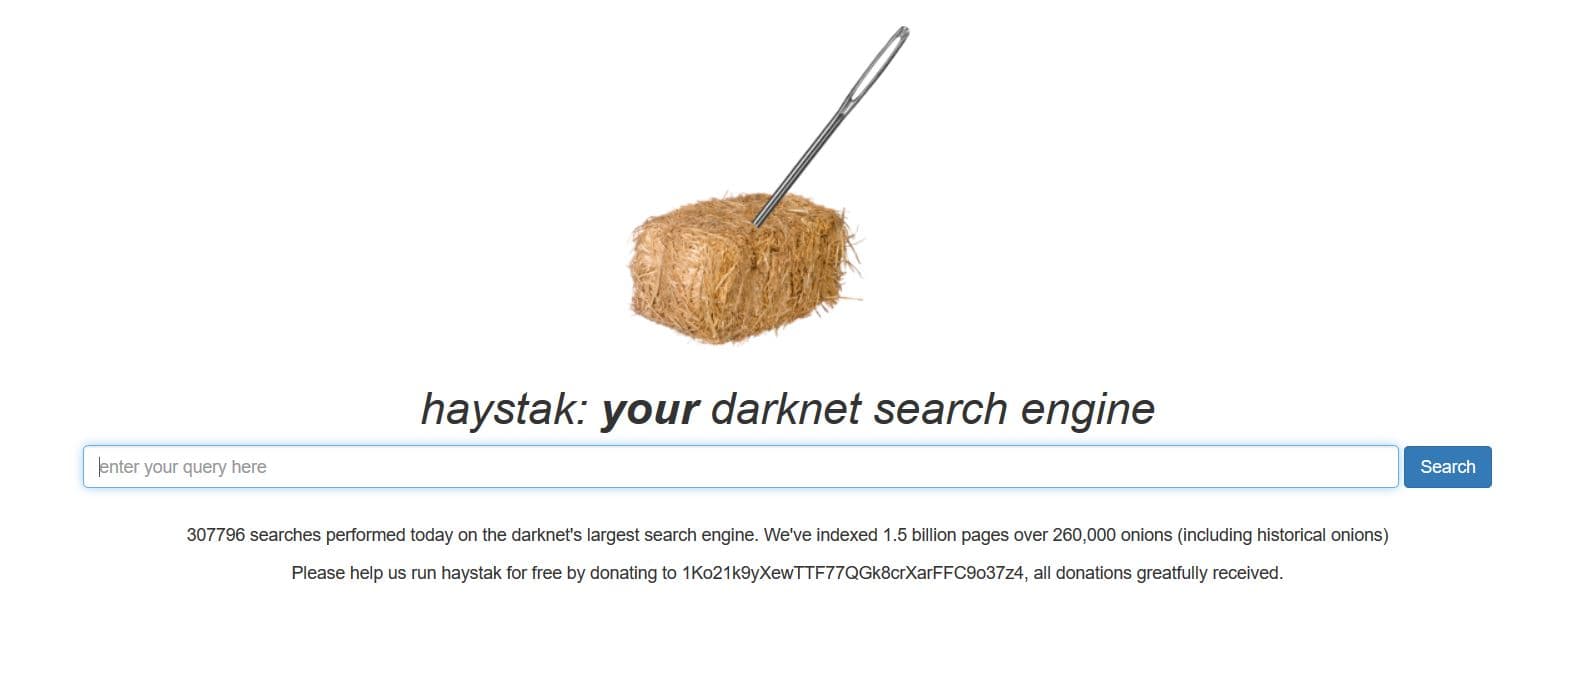 Darknet searching mega вход скачать tor browser на русском бесплатно для iphone megaruzxpnew4af